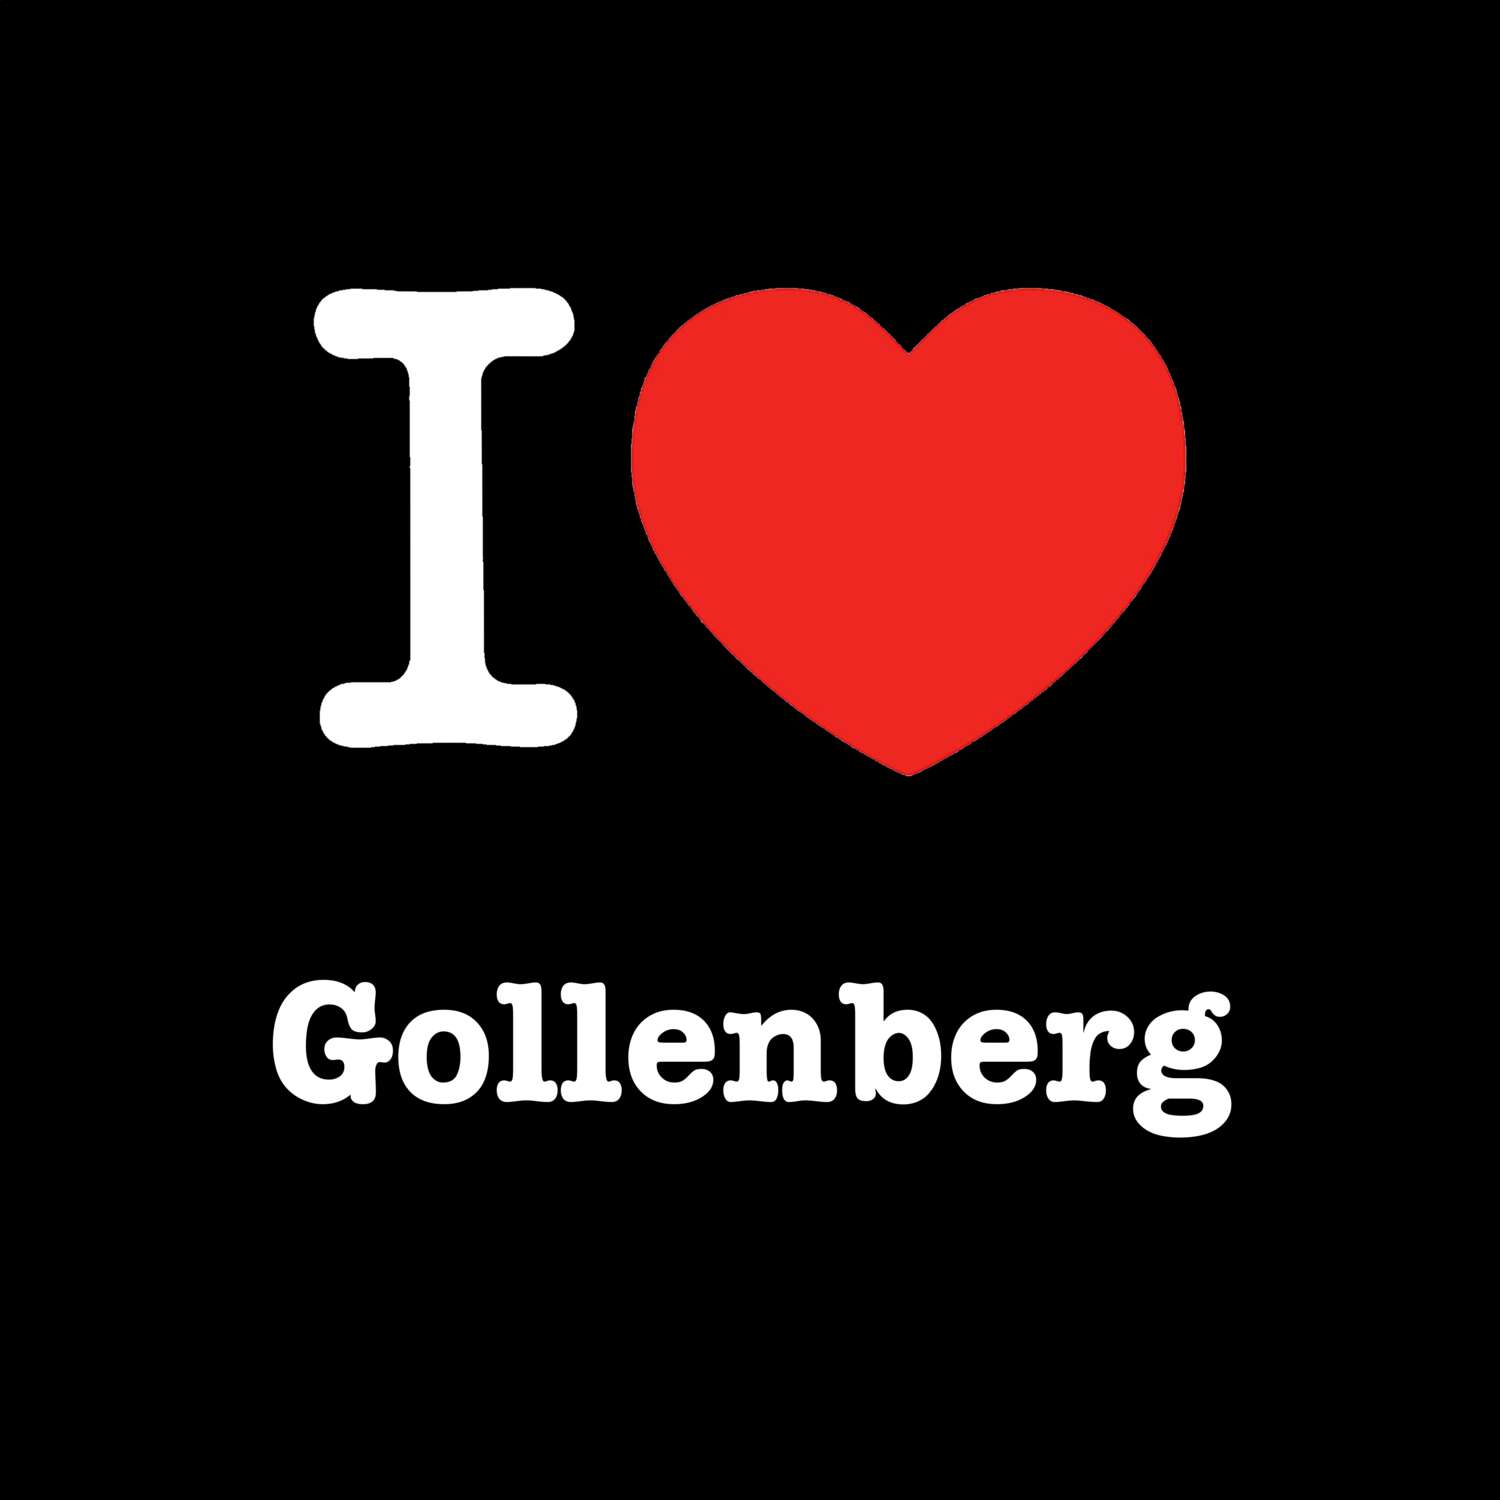 Gollenberg T-Shirt »I love«